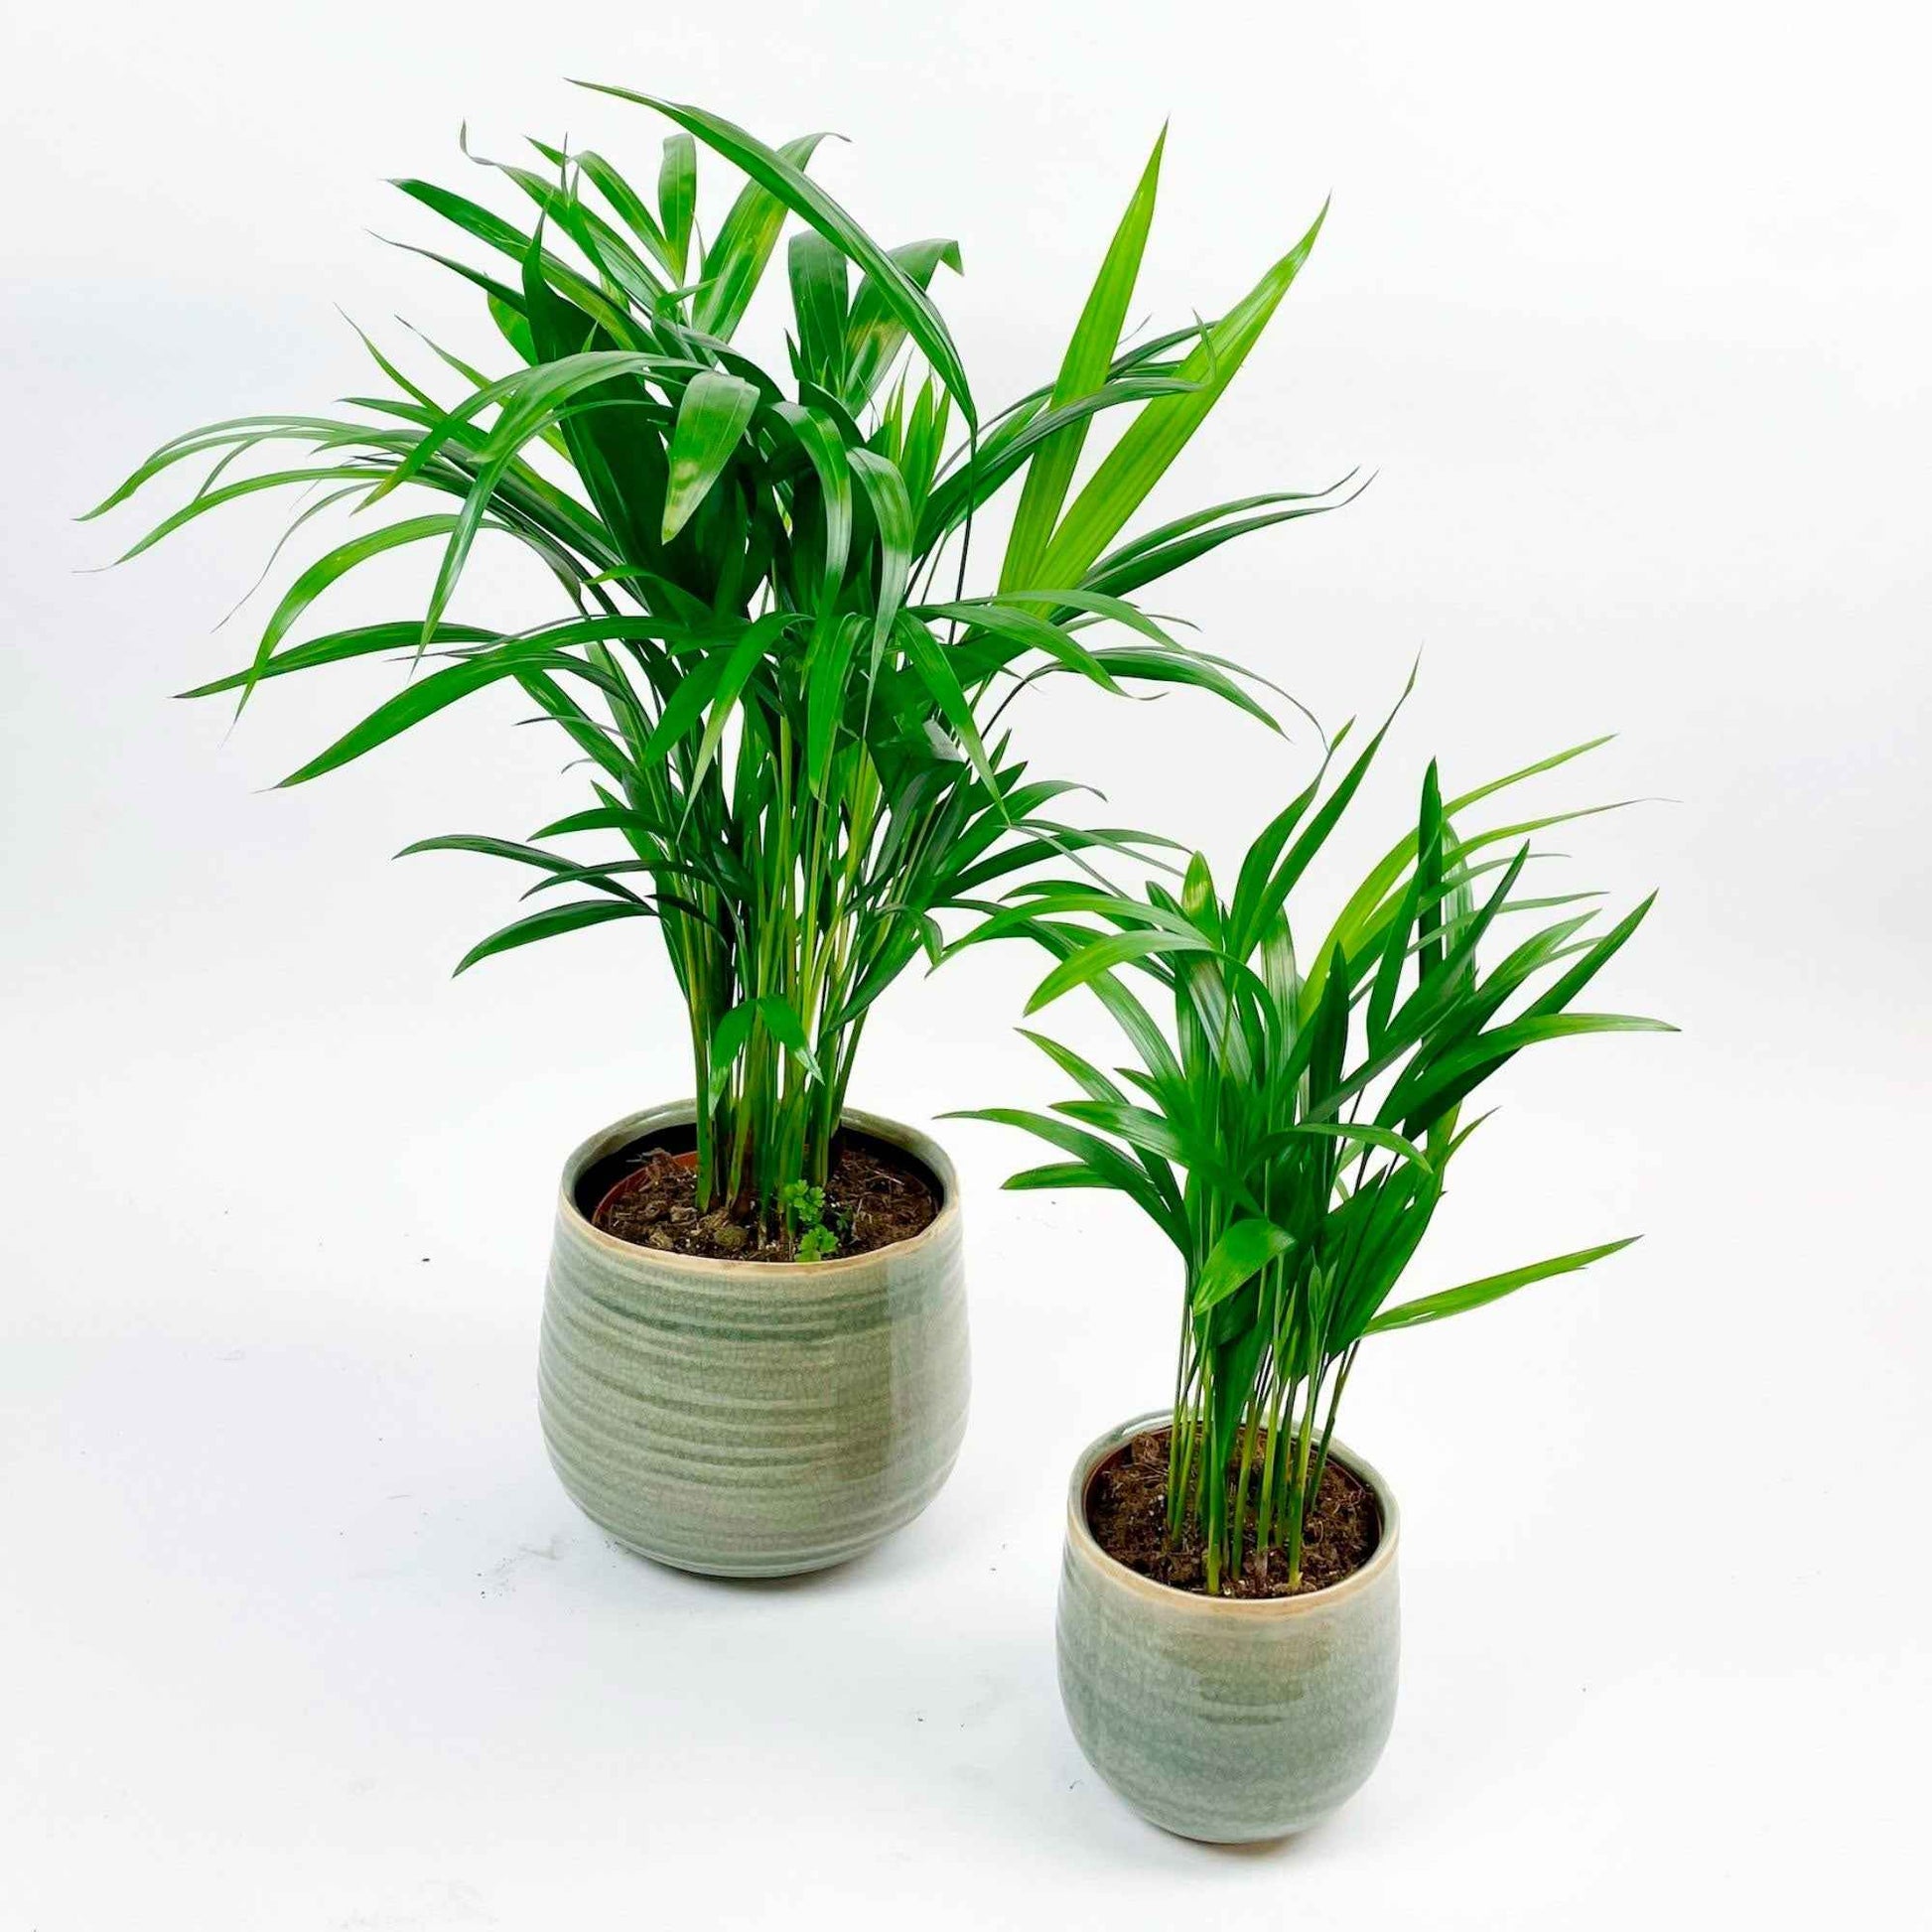 2x Palmier Areca Dypsis lutescens avec cache-pots verts - Ensembles de plantes d'intérieur